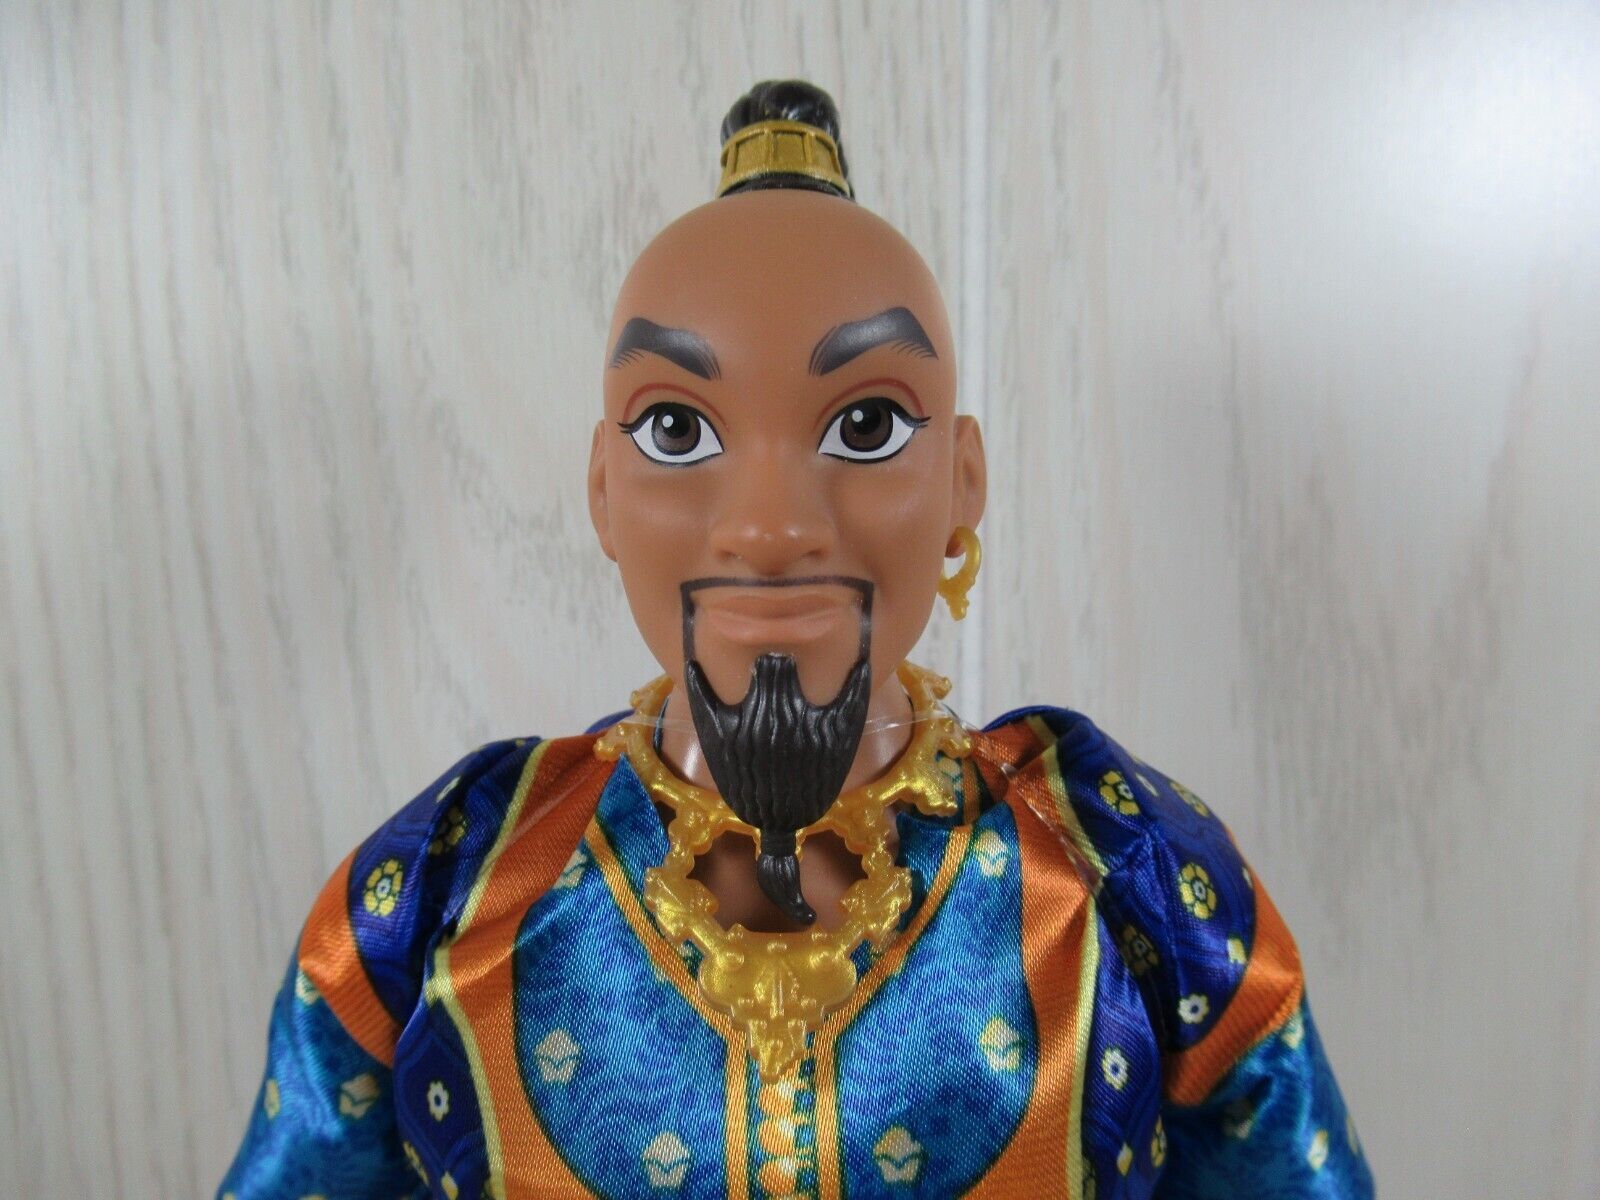 Disney Aladdin Movie's Genie doll 12” Hasbro Will Smith - $10.39